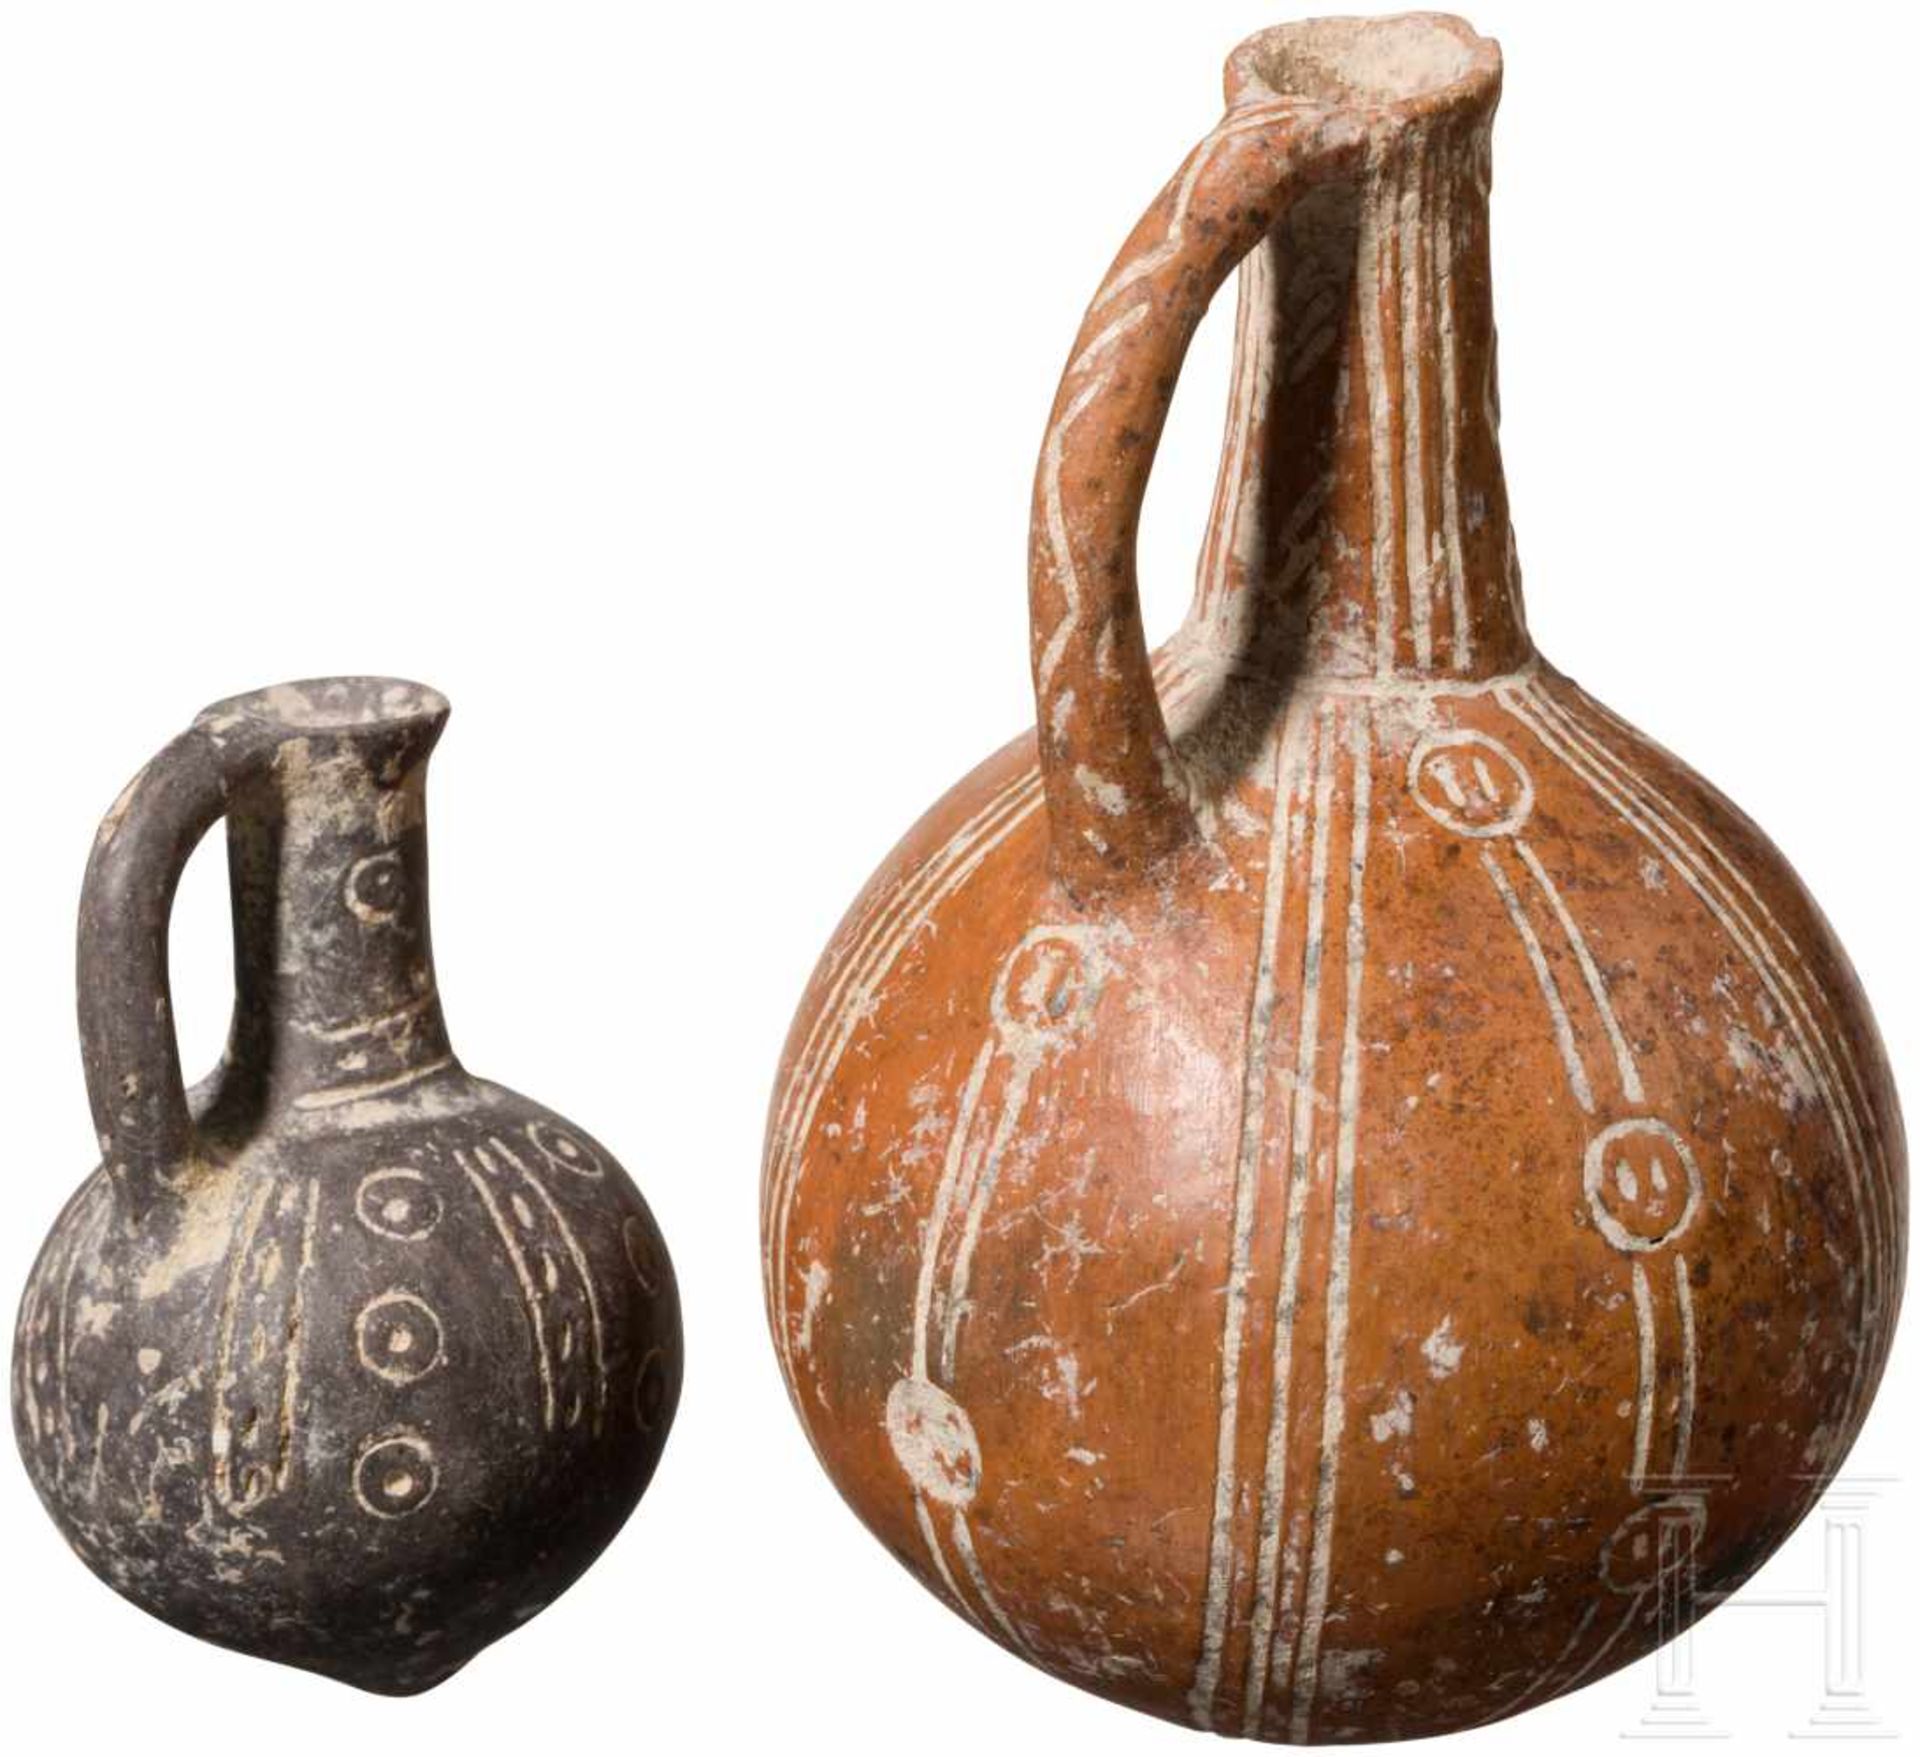 Zwei kugelige Flaschen mit Ritzdekor, Zypern, frühe Bronzezeit, 2200 - 2000 v. Chr.Zwei - Bild 2 aus 2